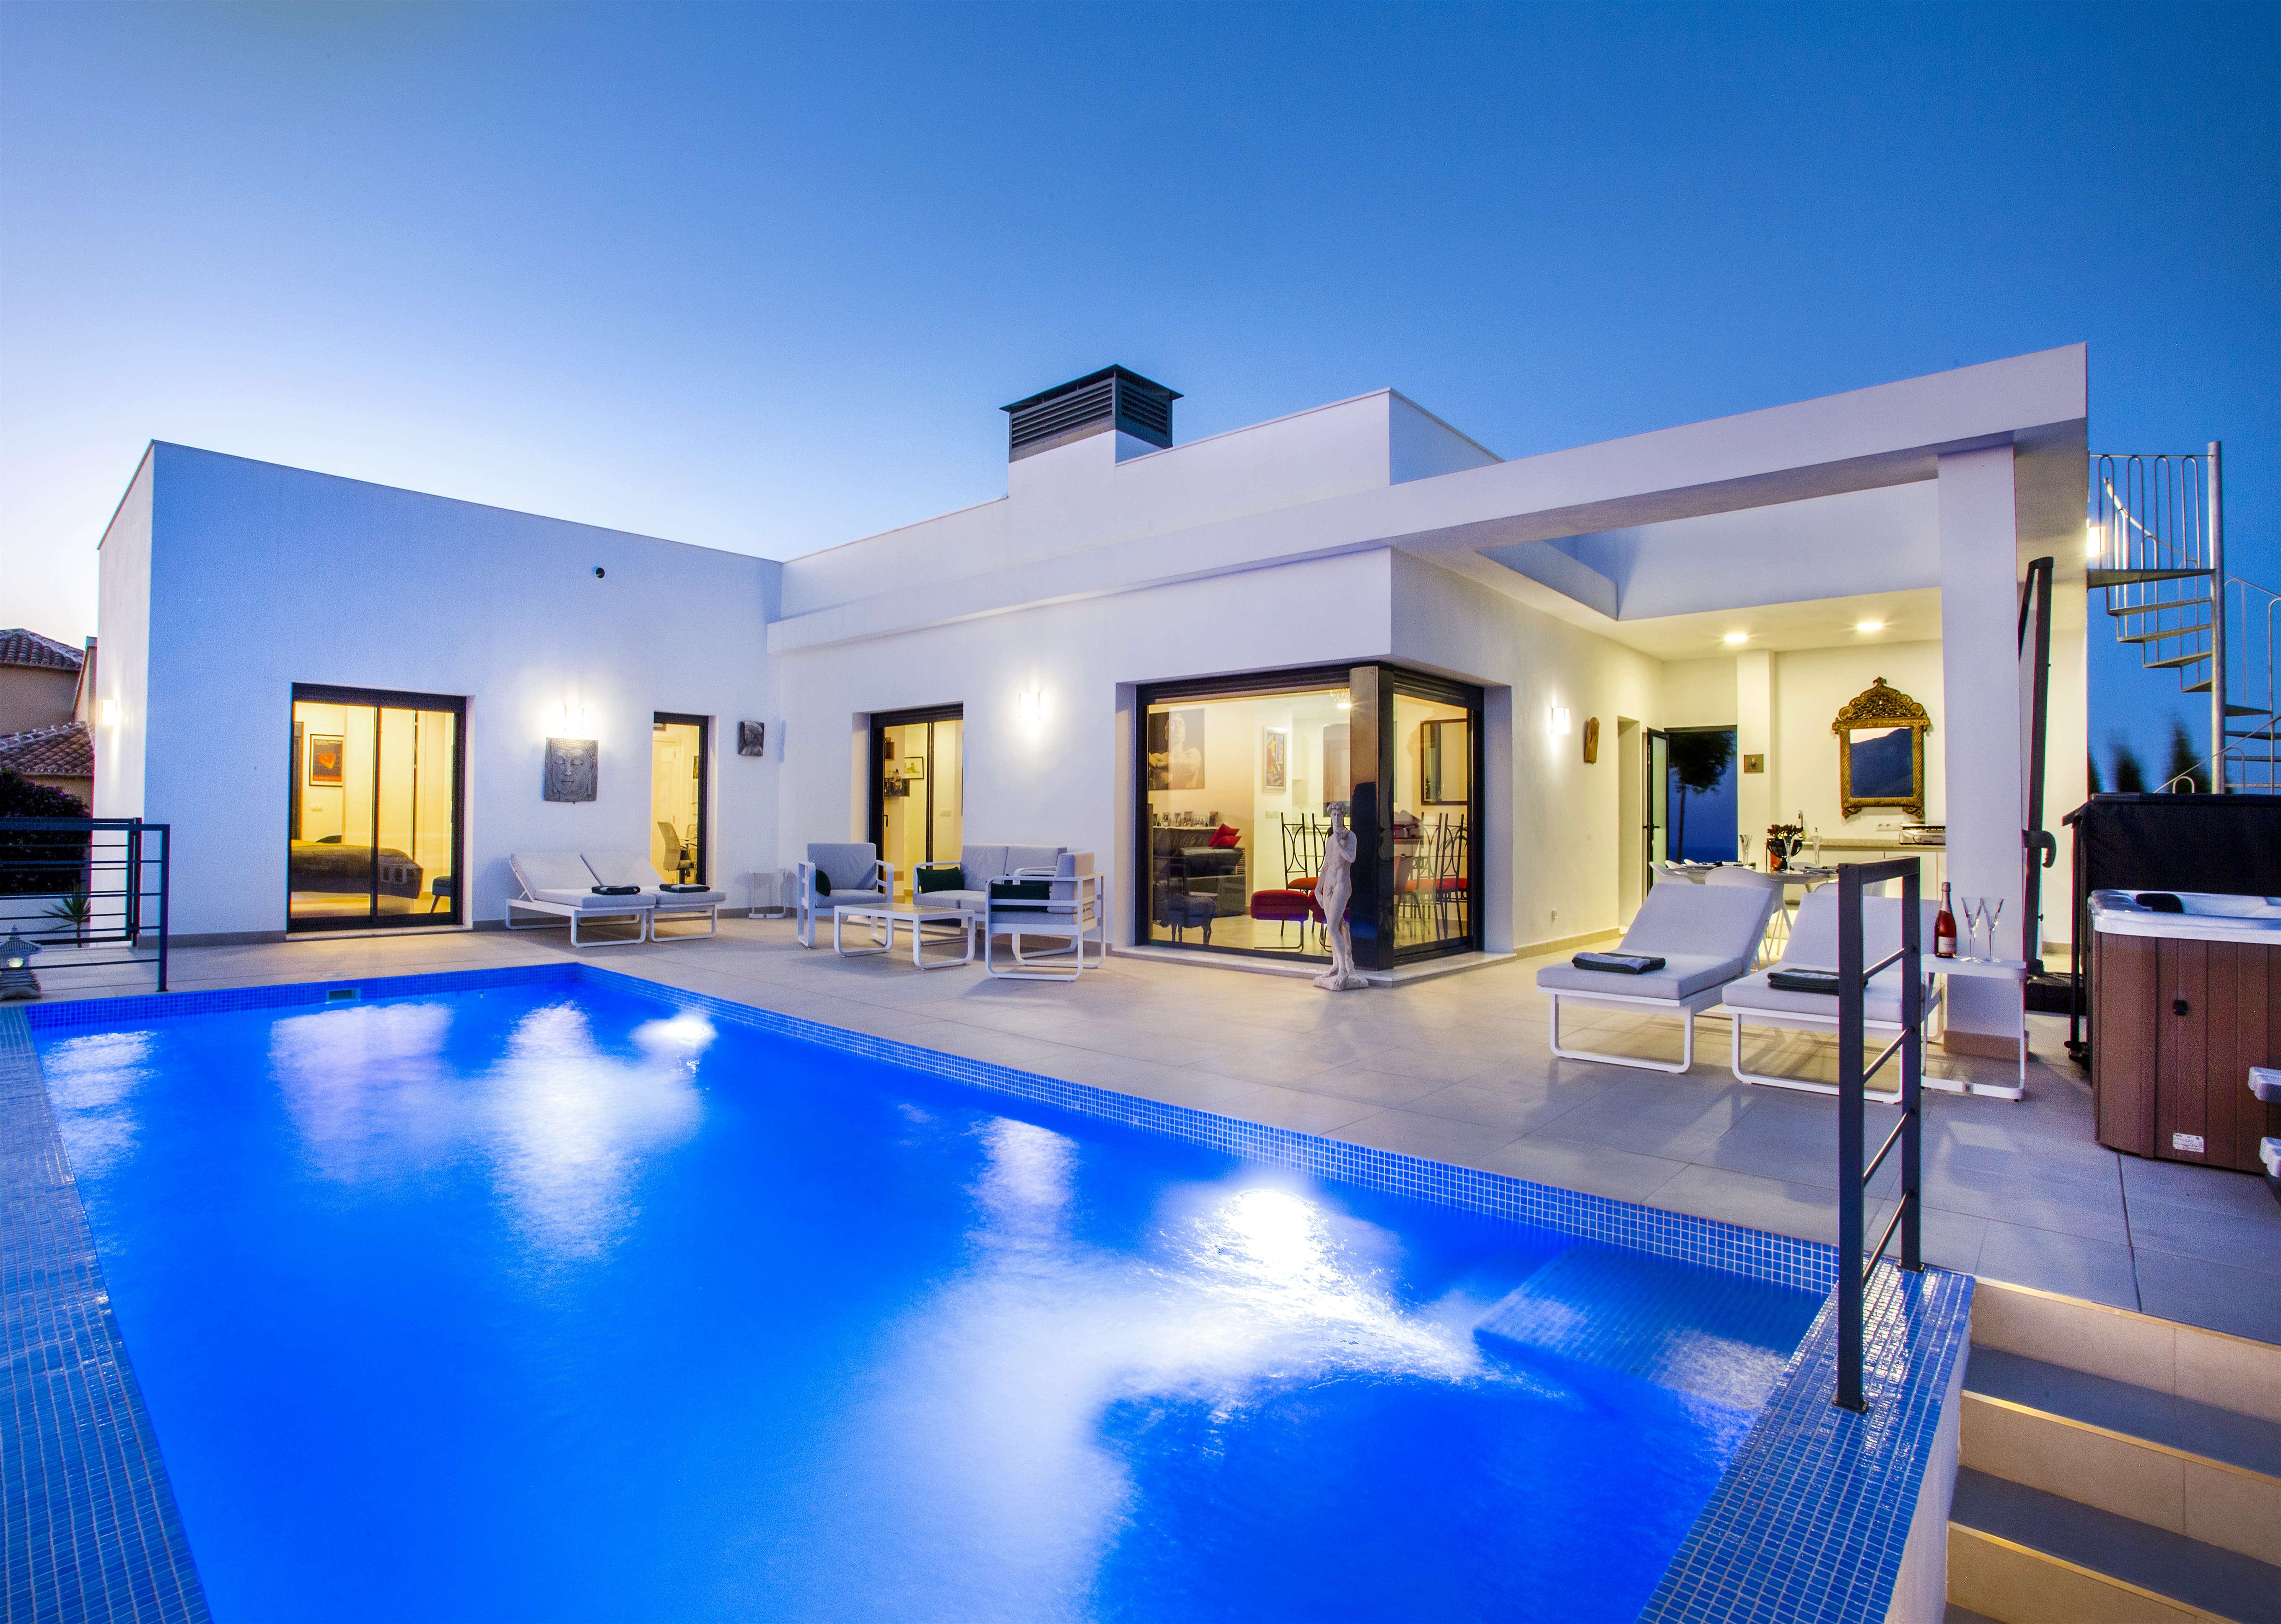 Obra nueva en venta 3 dormitorios diseño moderno con piscina